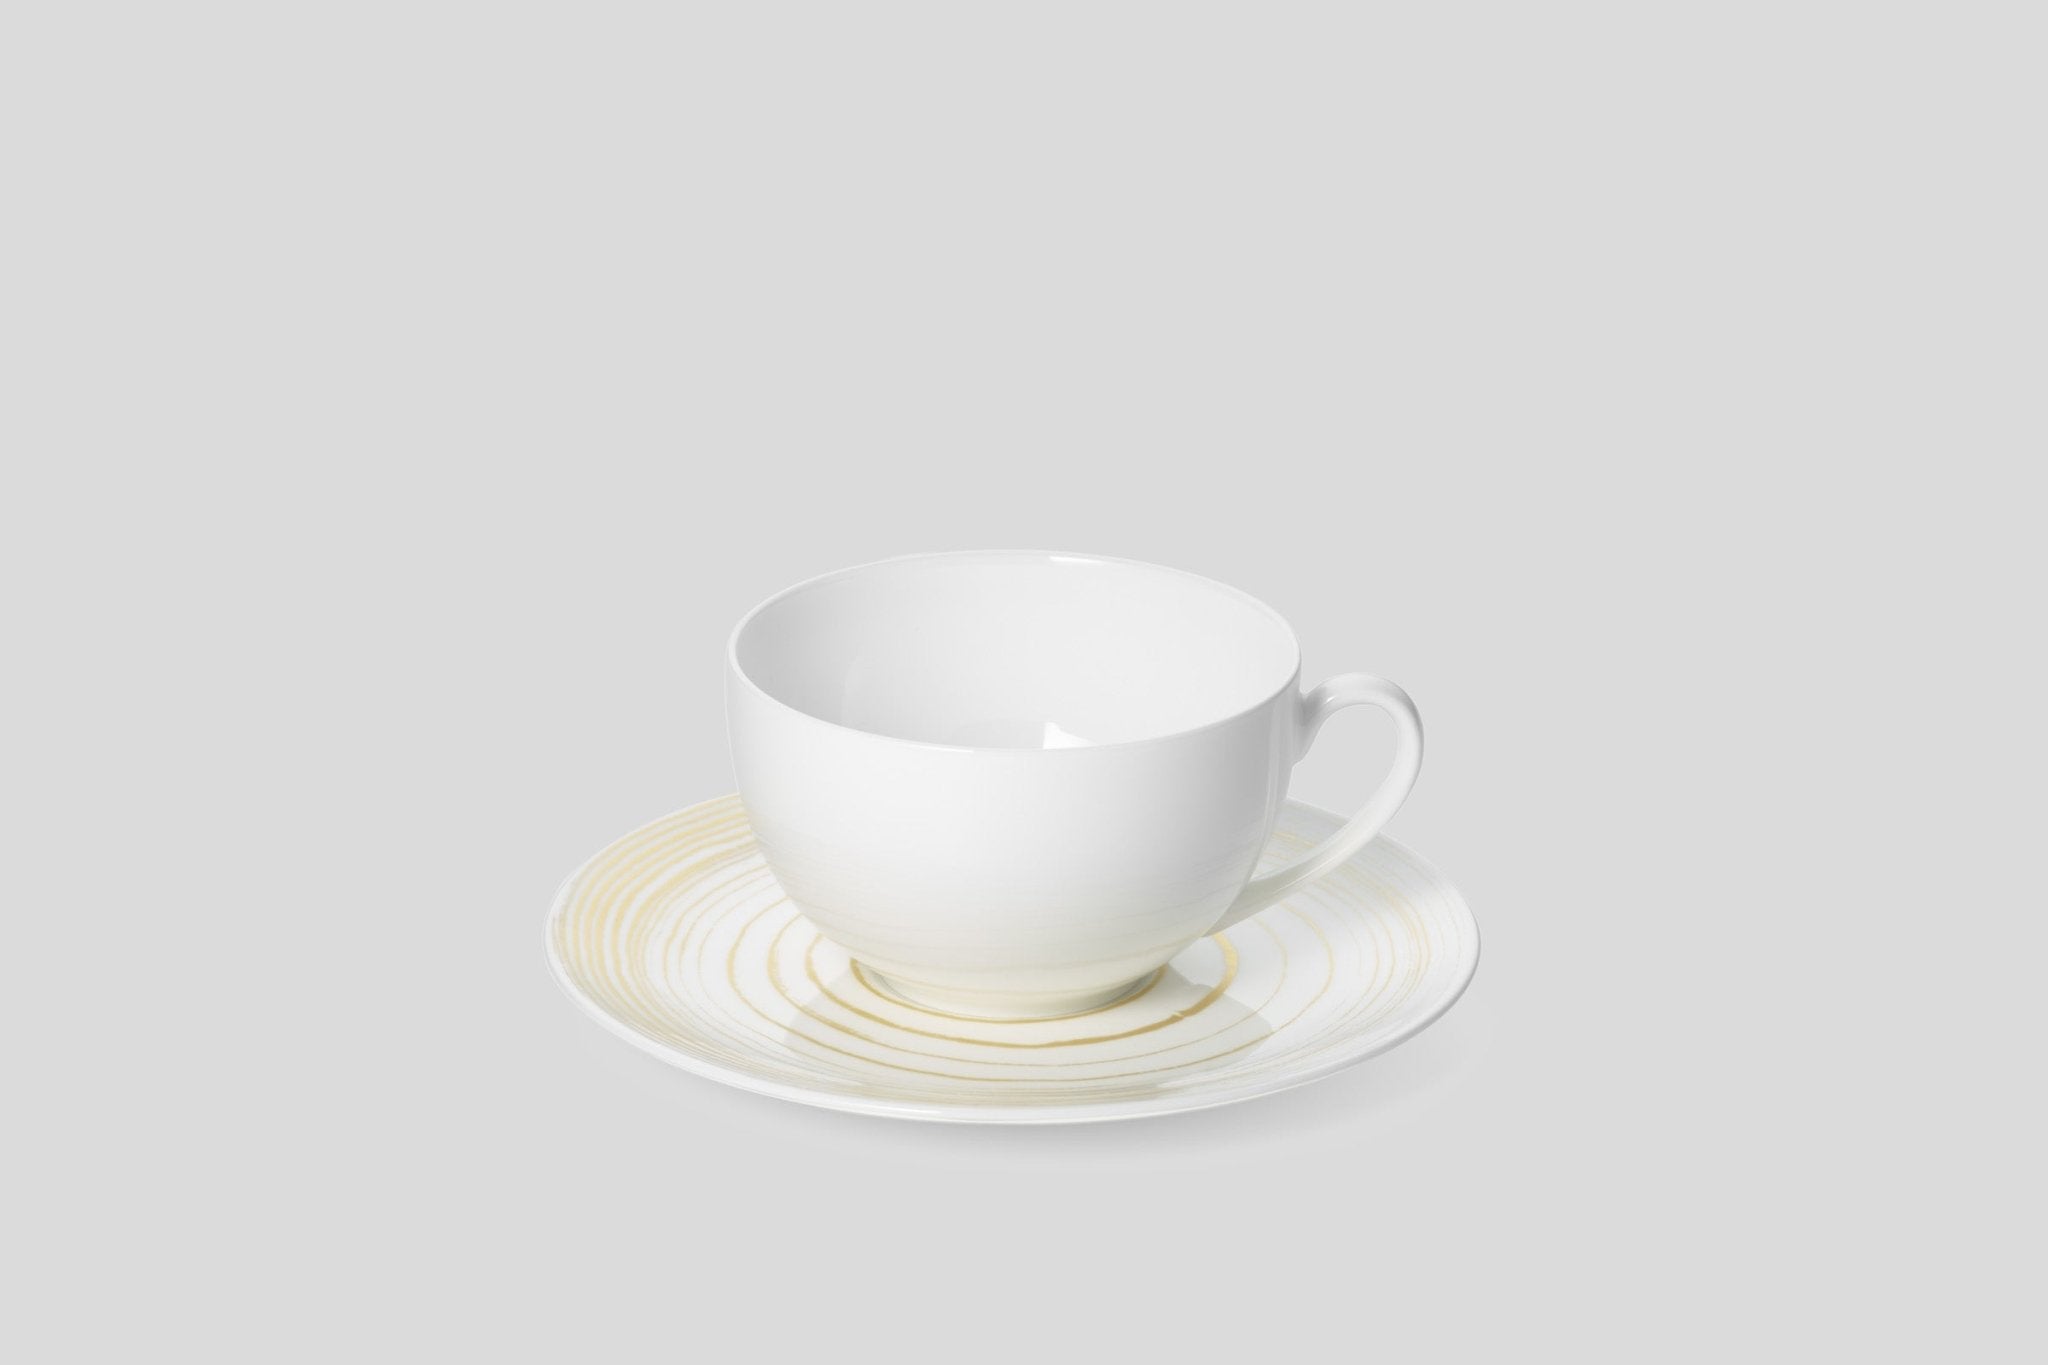 Designer-Luxury-Modern-Dibbern Golden Timber Coffee Cup and Saucer-Dibbern-Golden Timber-Gold-Bodo Sperlein-Bone China-Designer-Luxury-Modern-Tasse-Becher-Kaffee Tasse